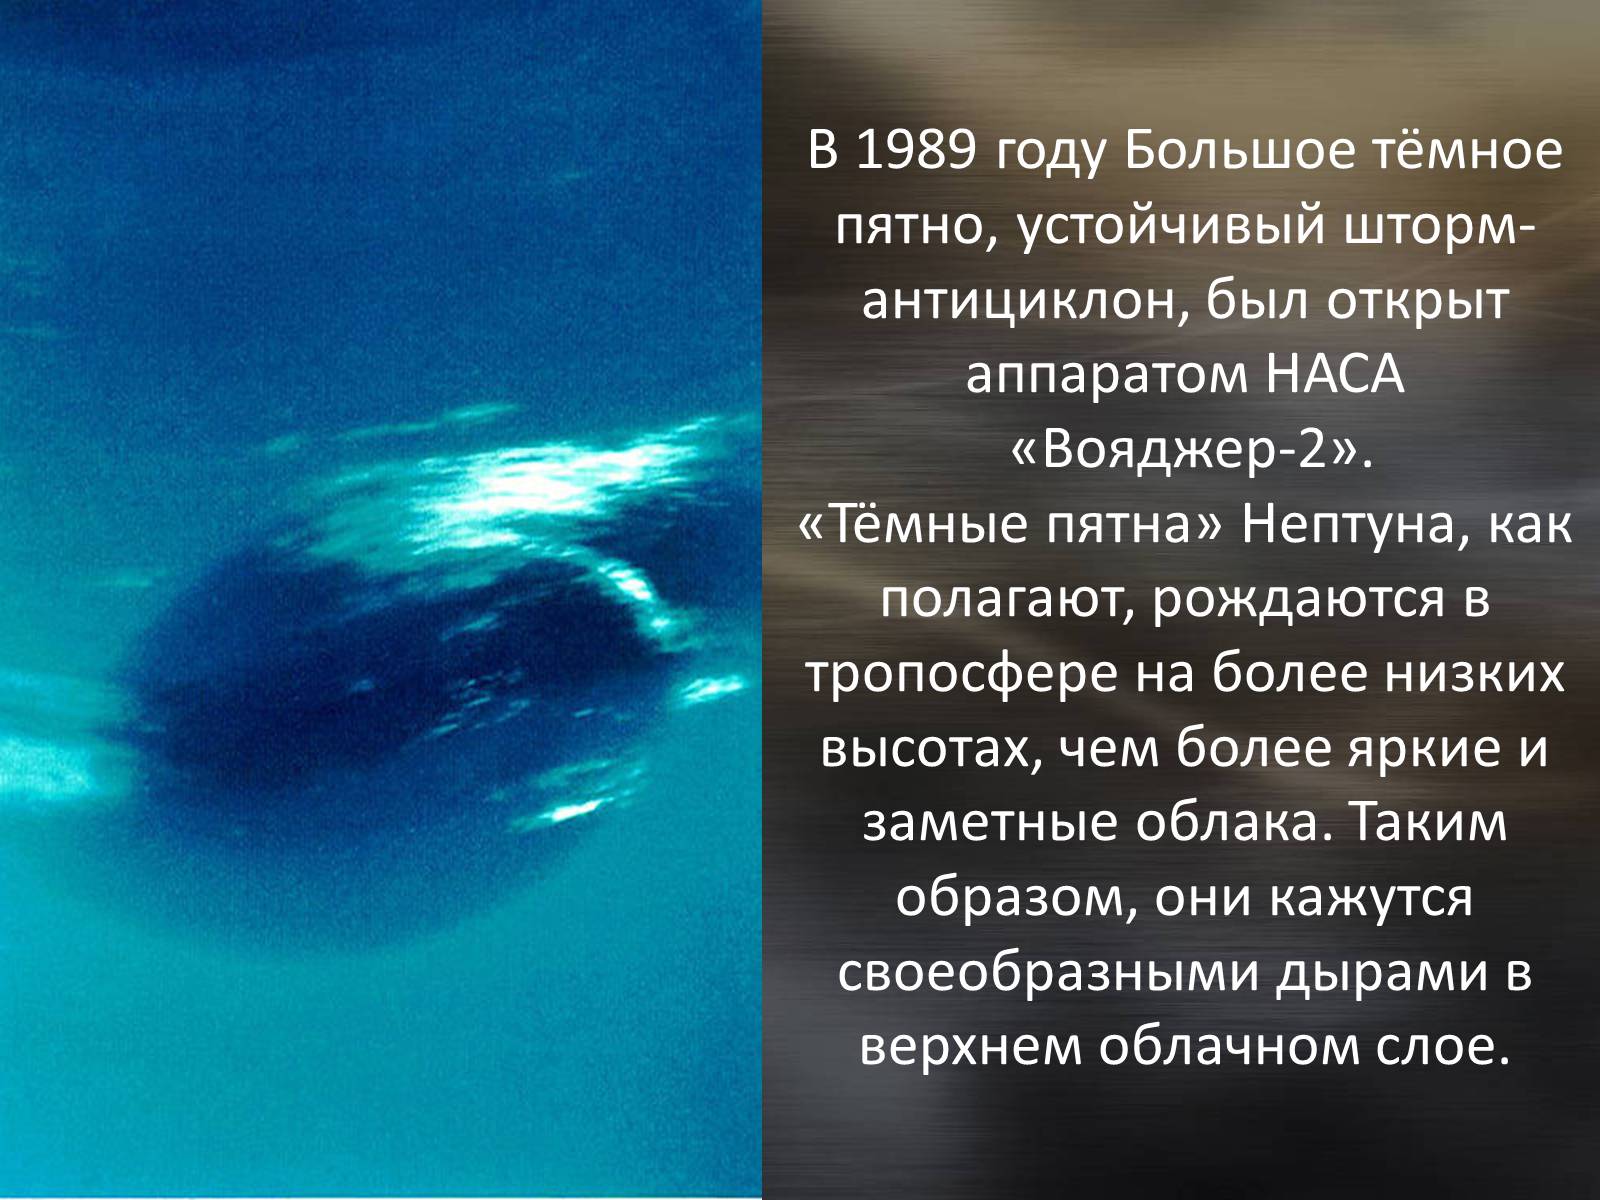 Нептун влияние. Планета Нептун Вояджер 1989. Пятно Нептуна. Темное пятно Нептуна. Большое пятно на Нептуне.